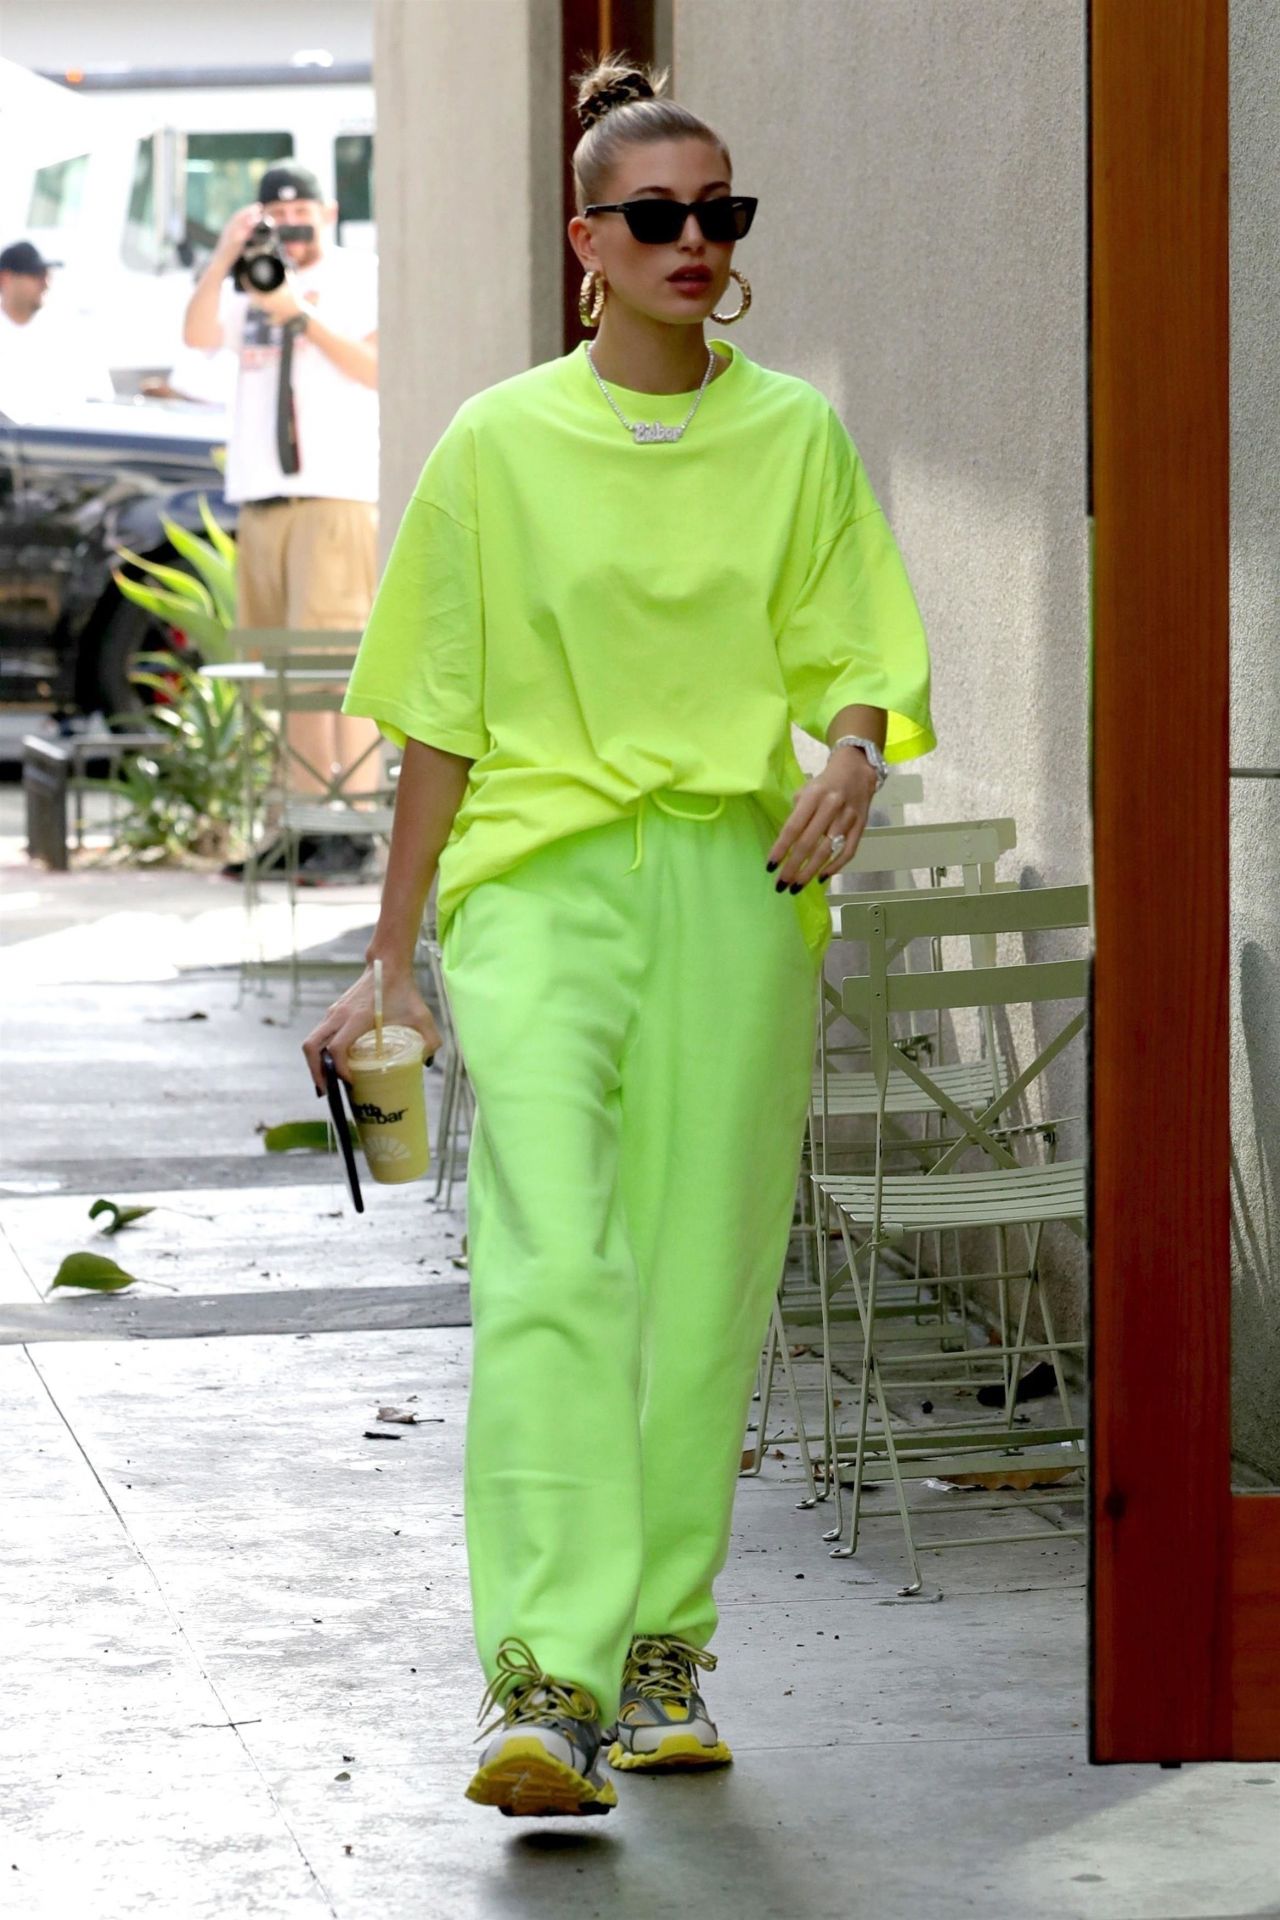 Hailey Baldwin: Gucci T-Shirt, Green Nylon Pants